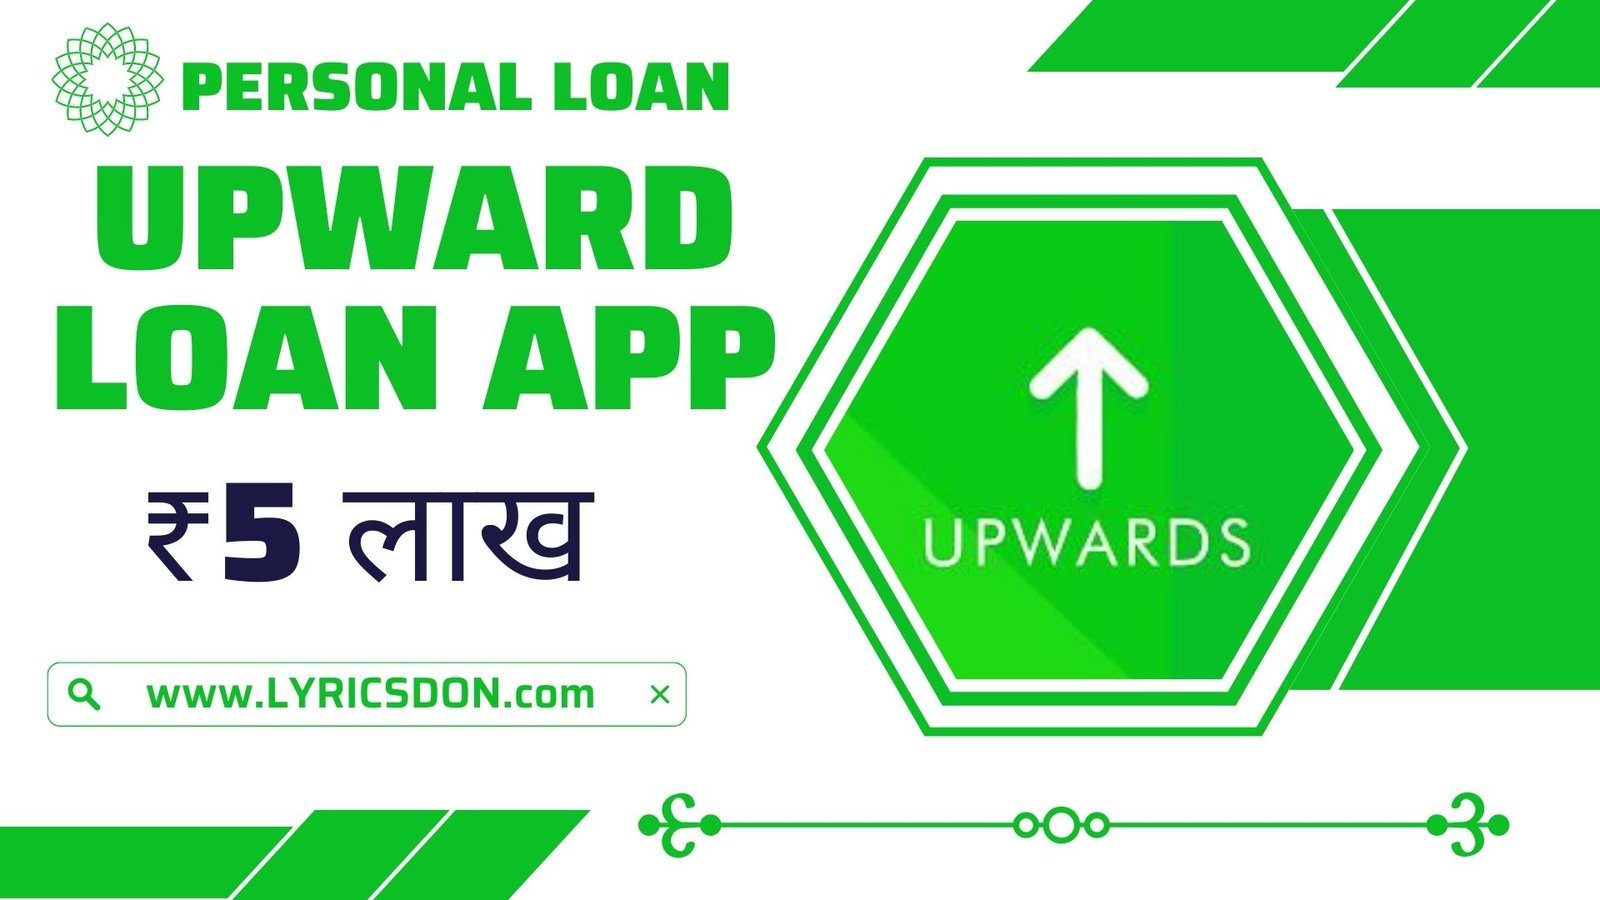 Upwards Loan App Loan Amount